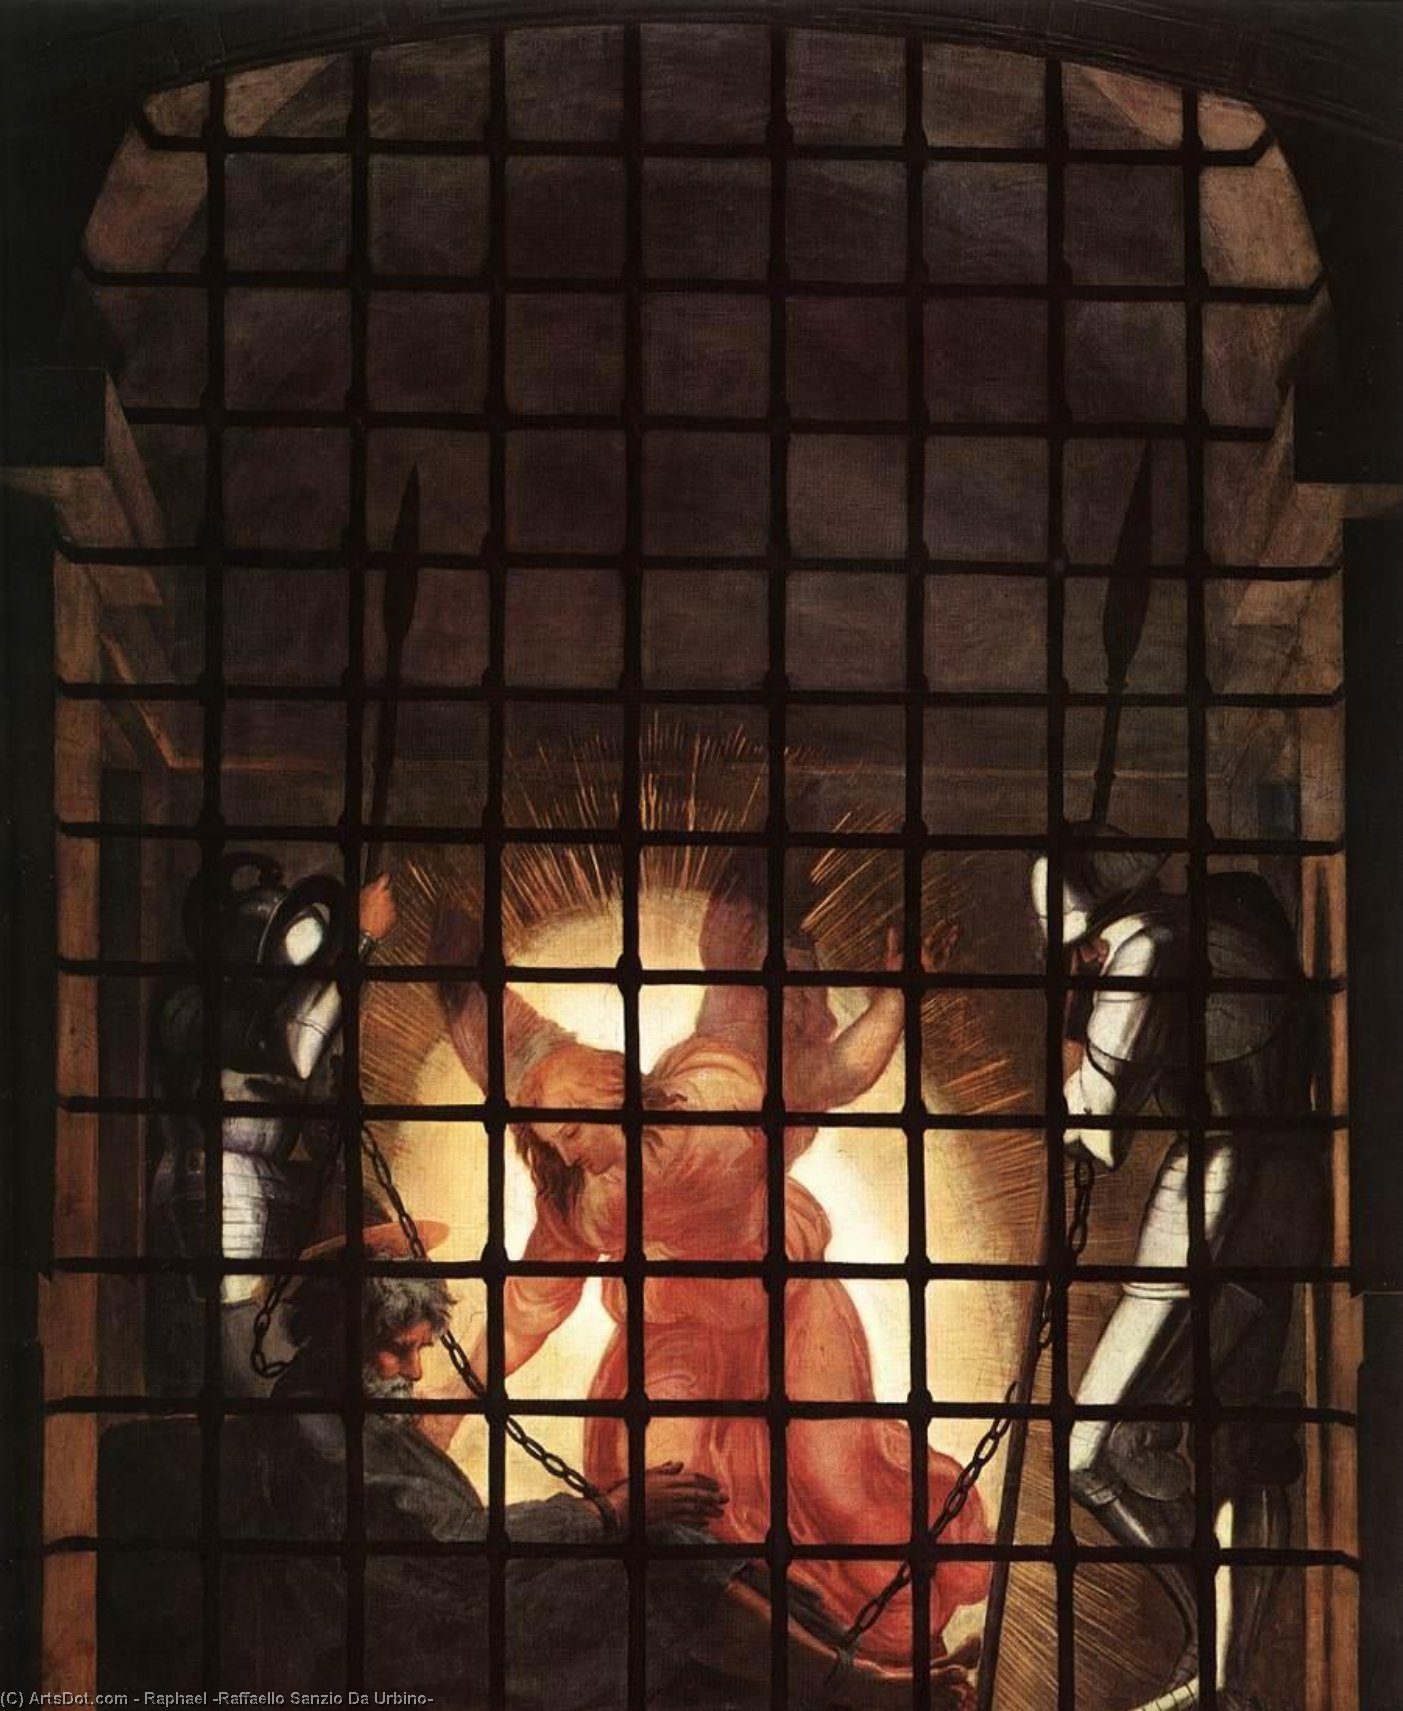 WikiOO.org - Enciclopédia das Belas Artes - Pintura, Arte por Raphael (Raffaello Sanzio Da Urbino) - Stanze Vaticane - The Liberation of St Peter (detail) [02]